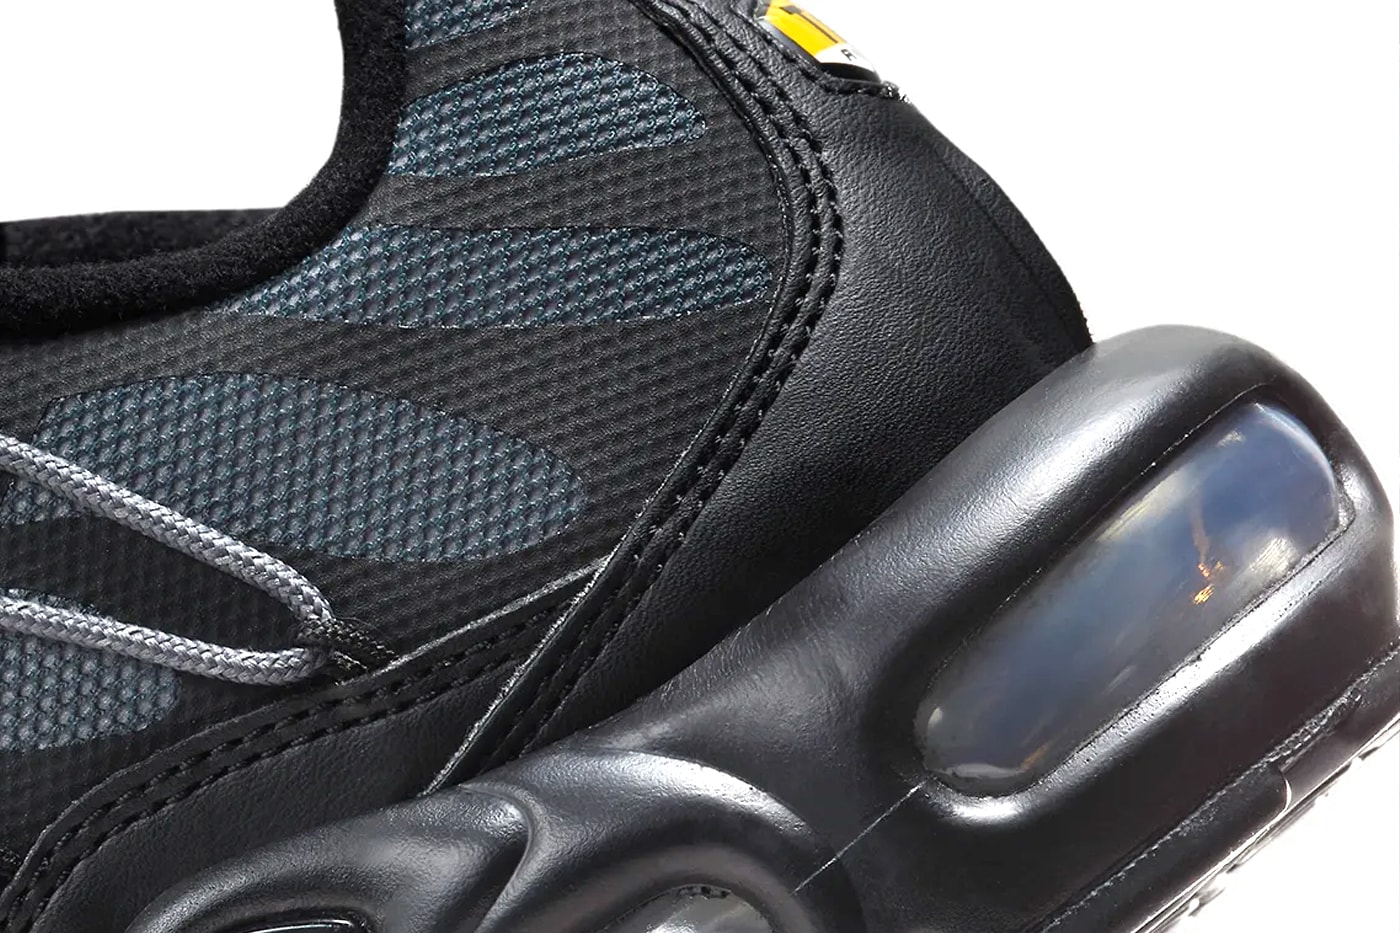 ナイキ エア マックス プラスからトグルレースを備えた新作 ブラック/メタリックシルバーが登場 Nike Air Max Plus Toggle Laces "Black/Metallic Silver" FZ2770-001 nike technical sneakers everyday swoosh